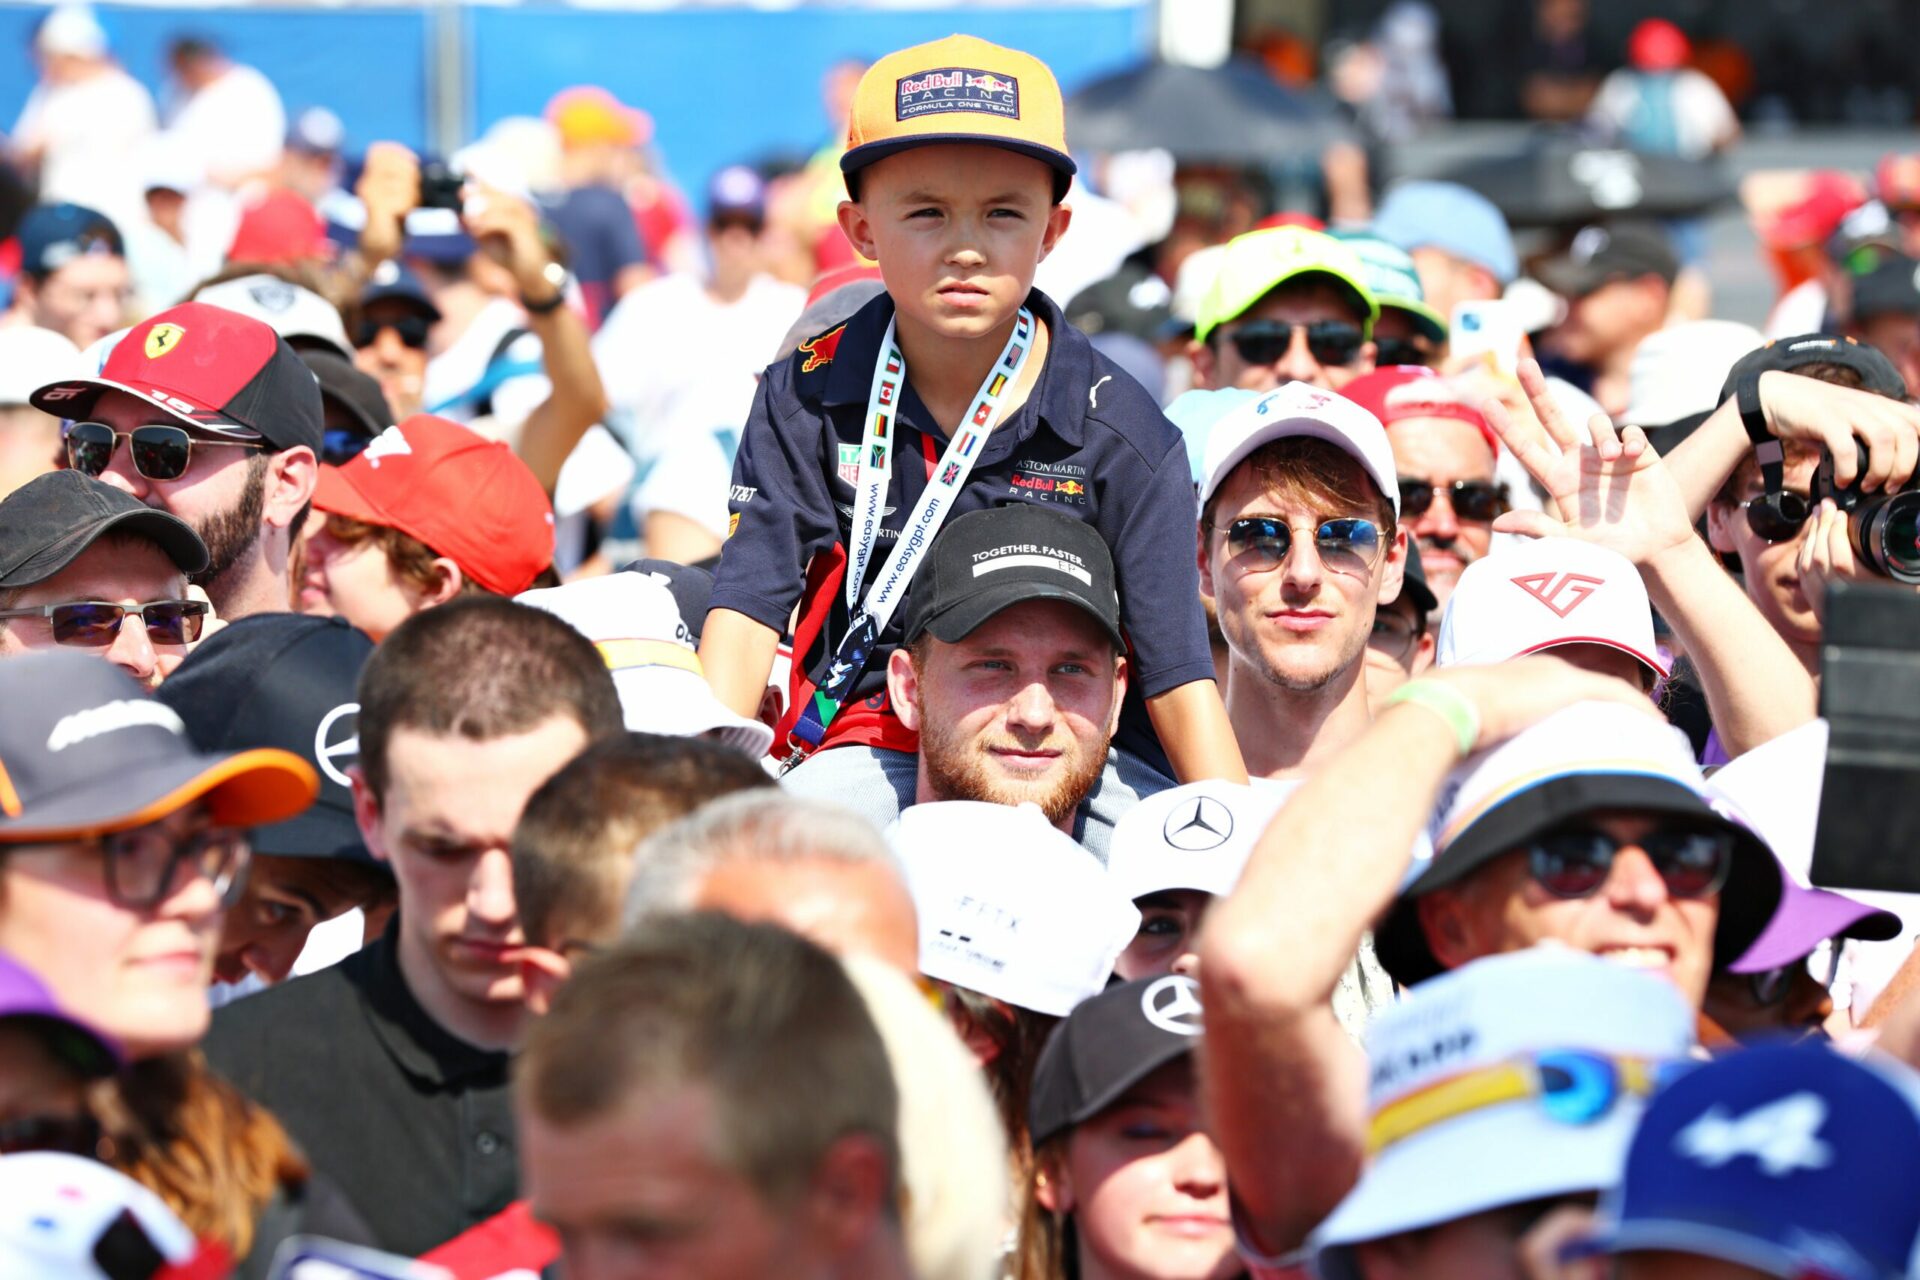 F1 - La communauté de la F1 appelle à mettre fin à tous les abus dans le sport